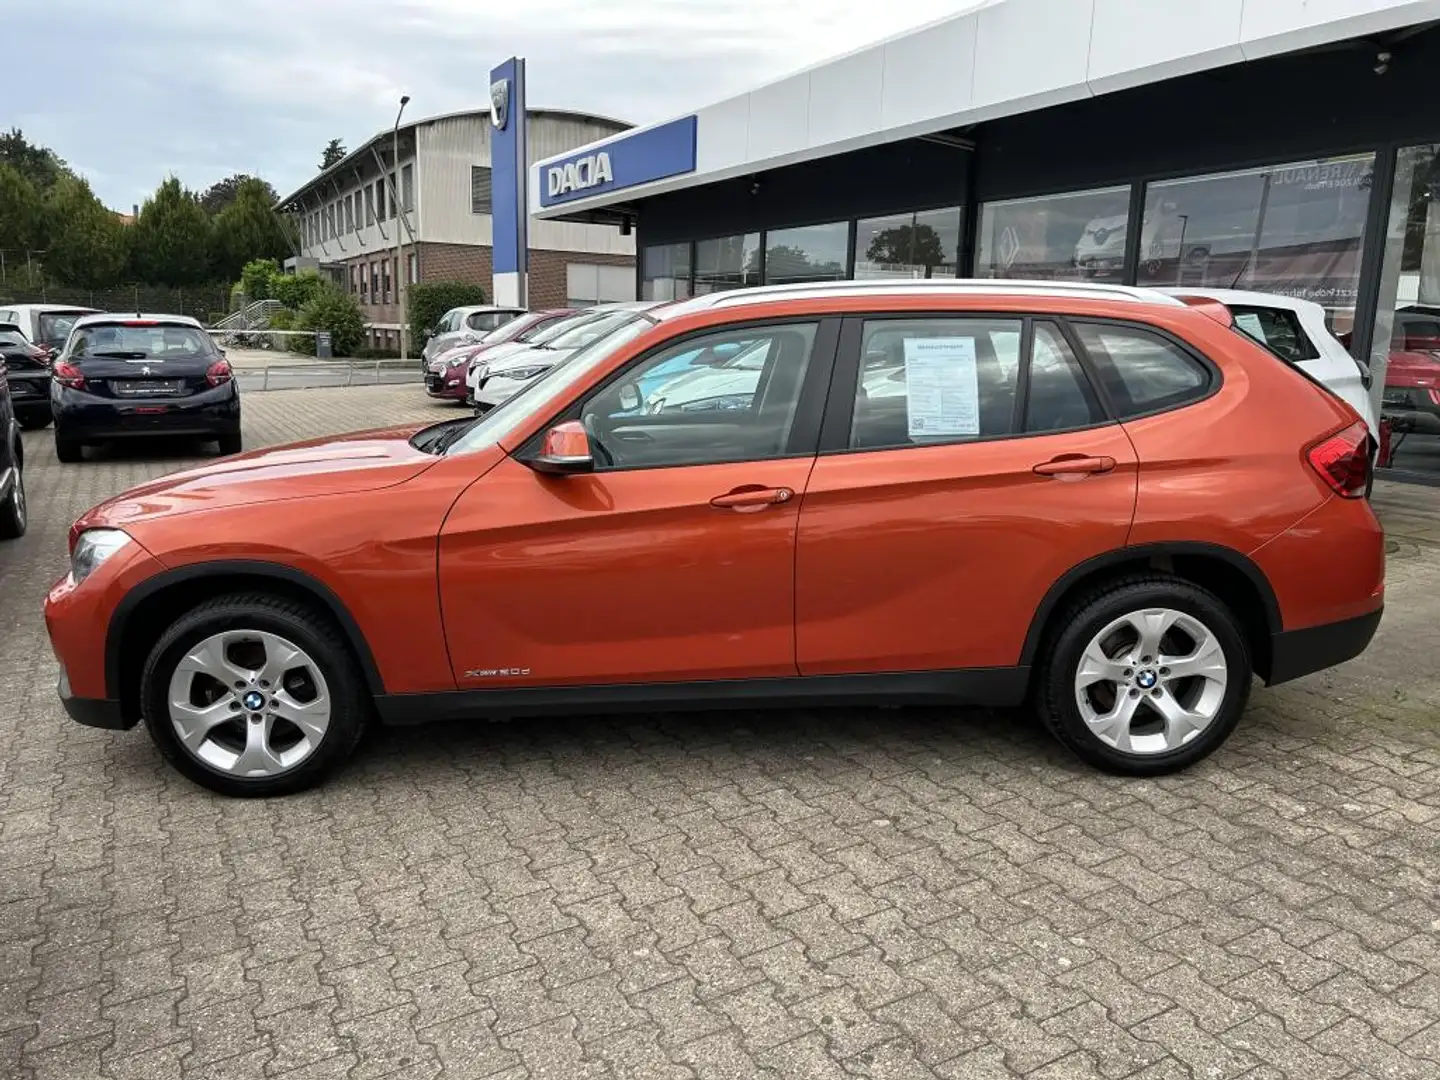 BMW X1 Orange - 2